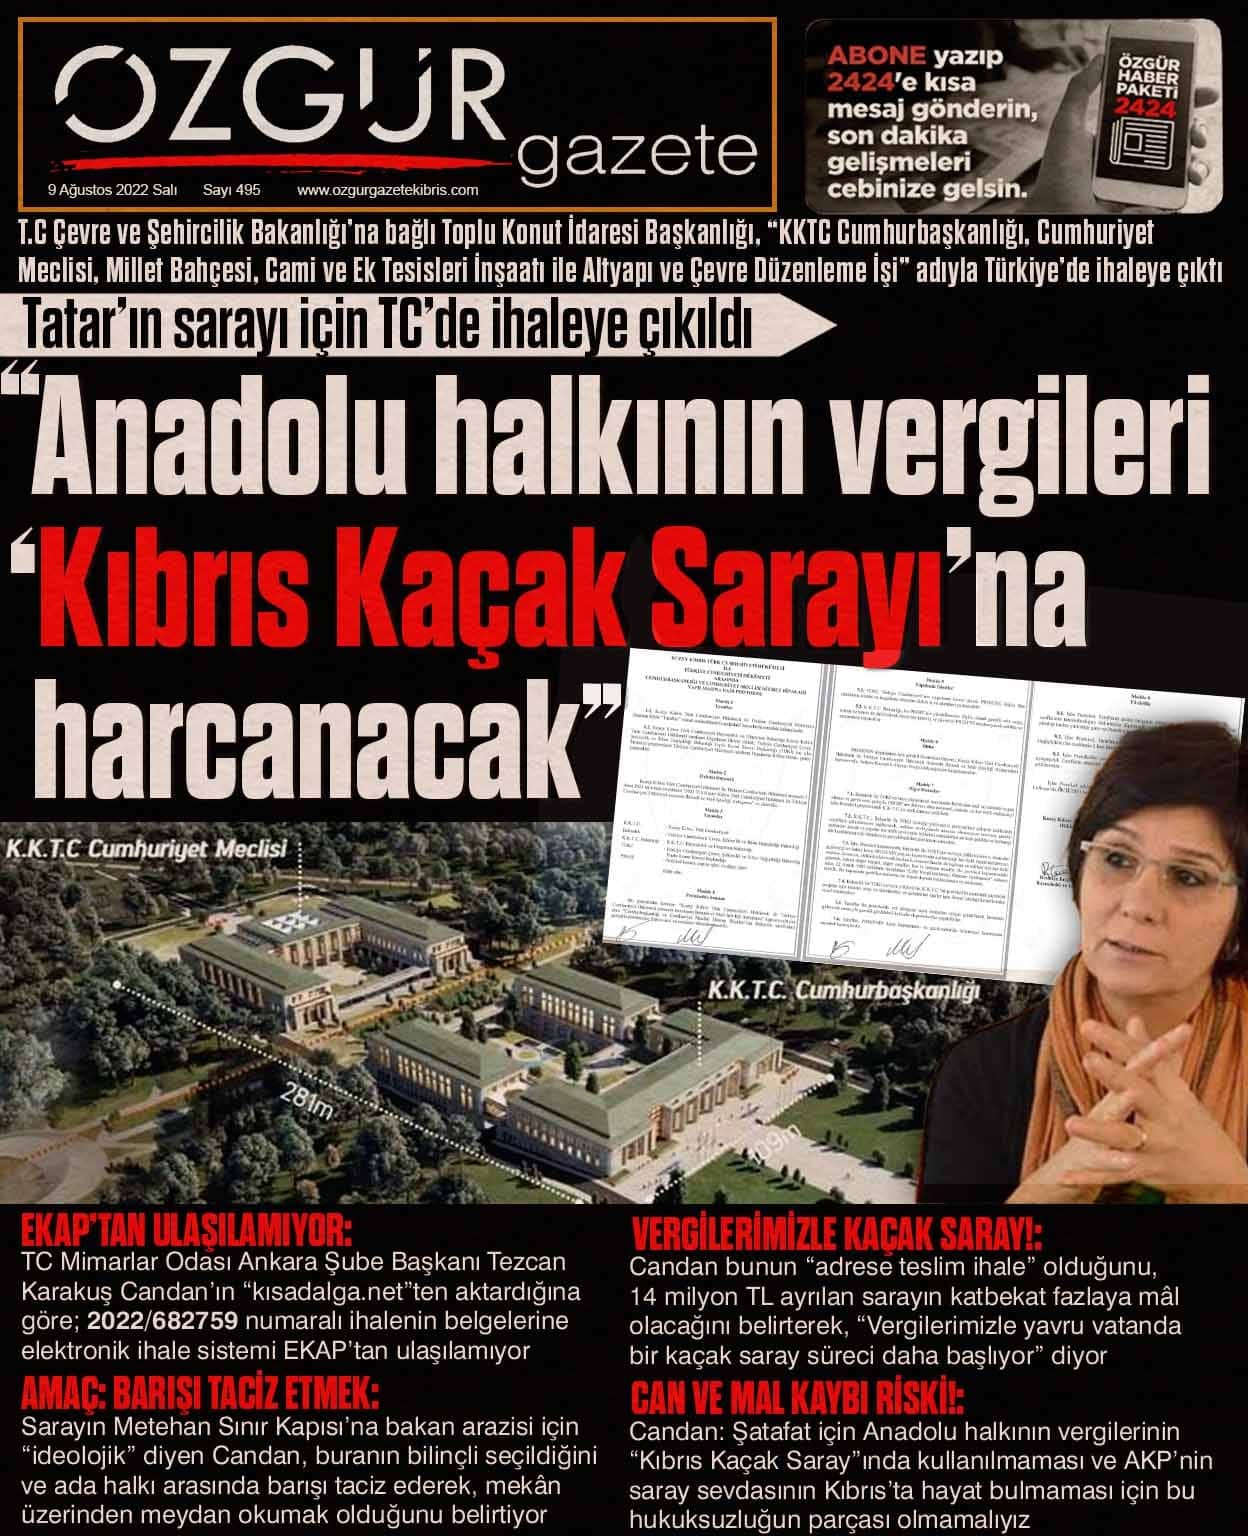 ozgur_gazete_kibris_kacak_saray_anadolu_halkinin_vergileri_gazetemanseti